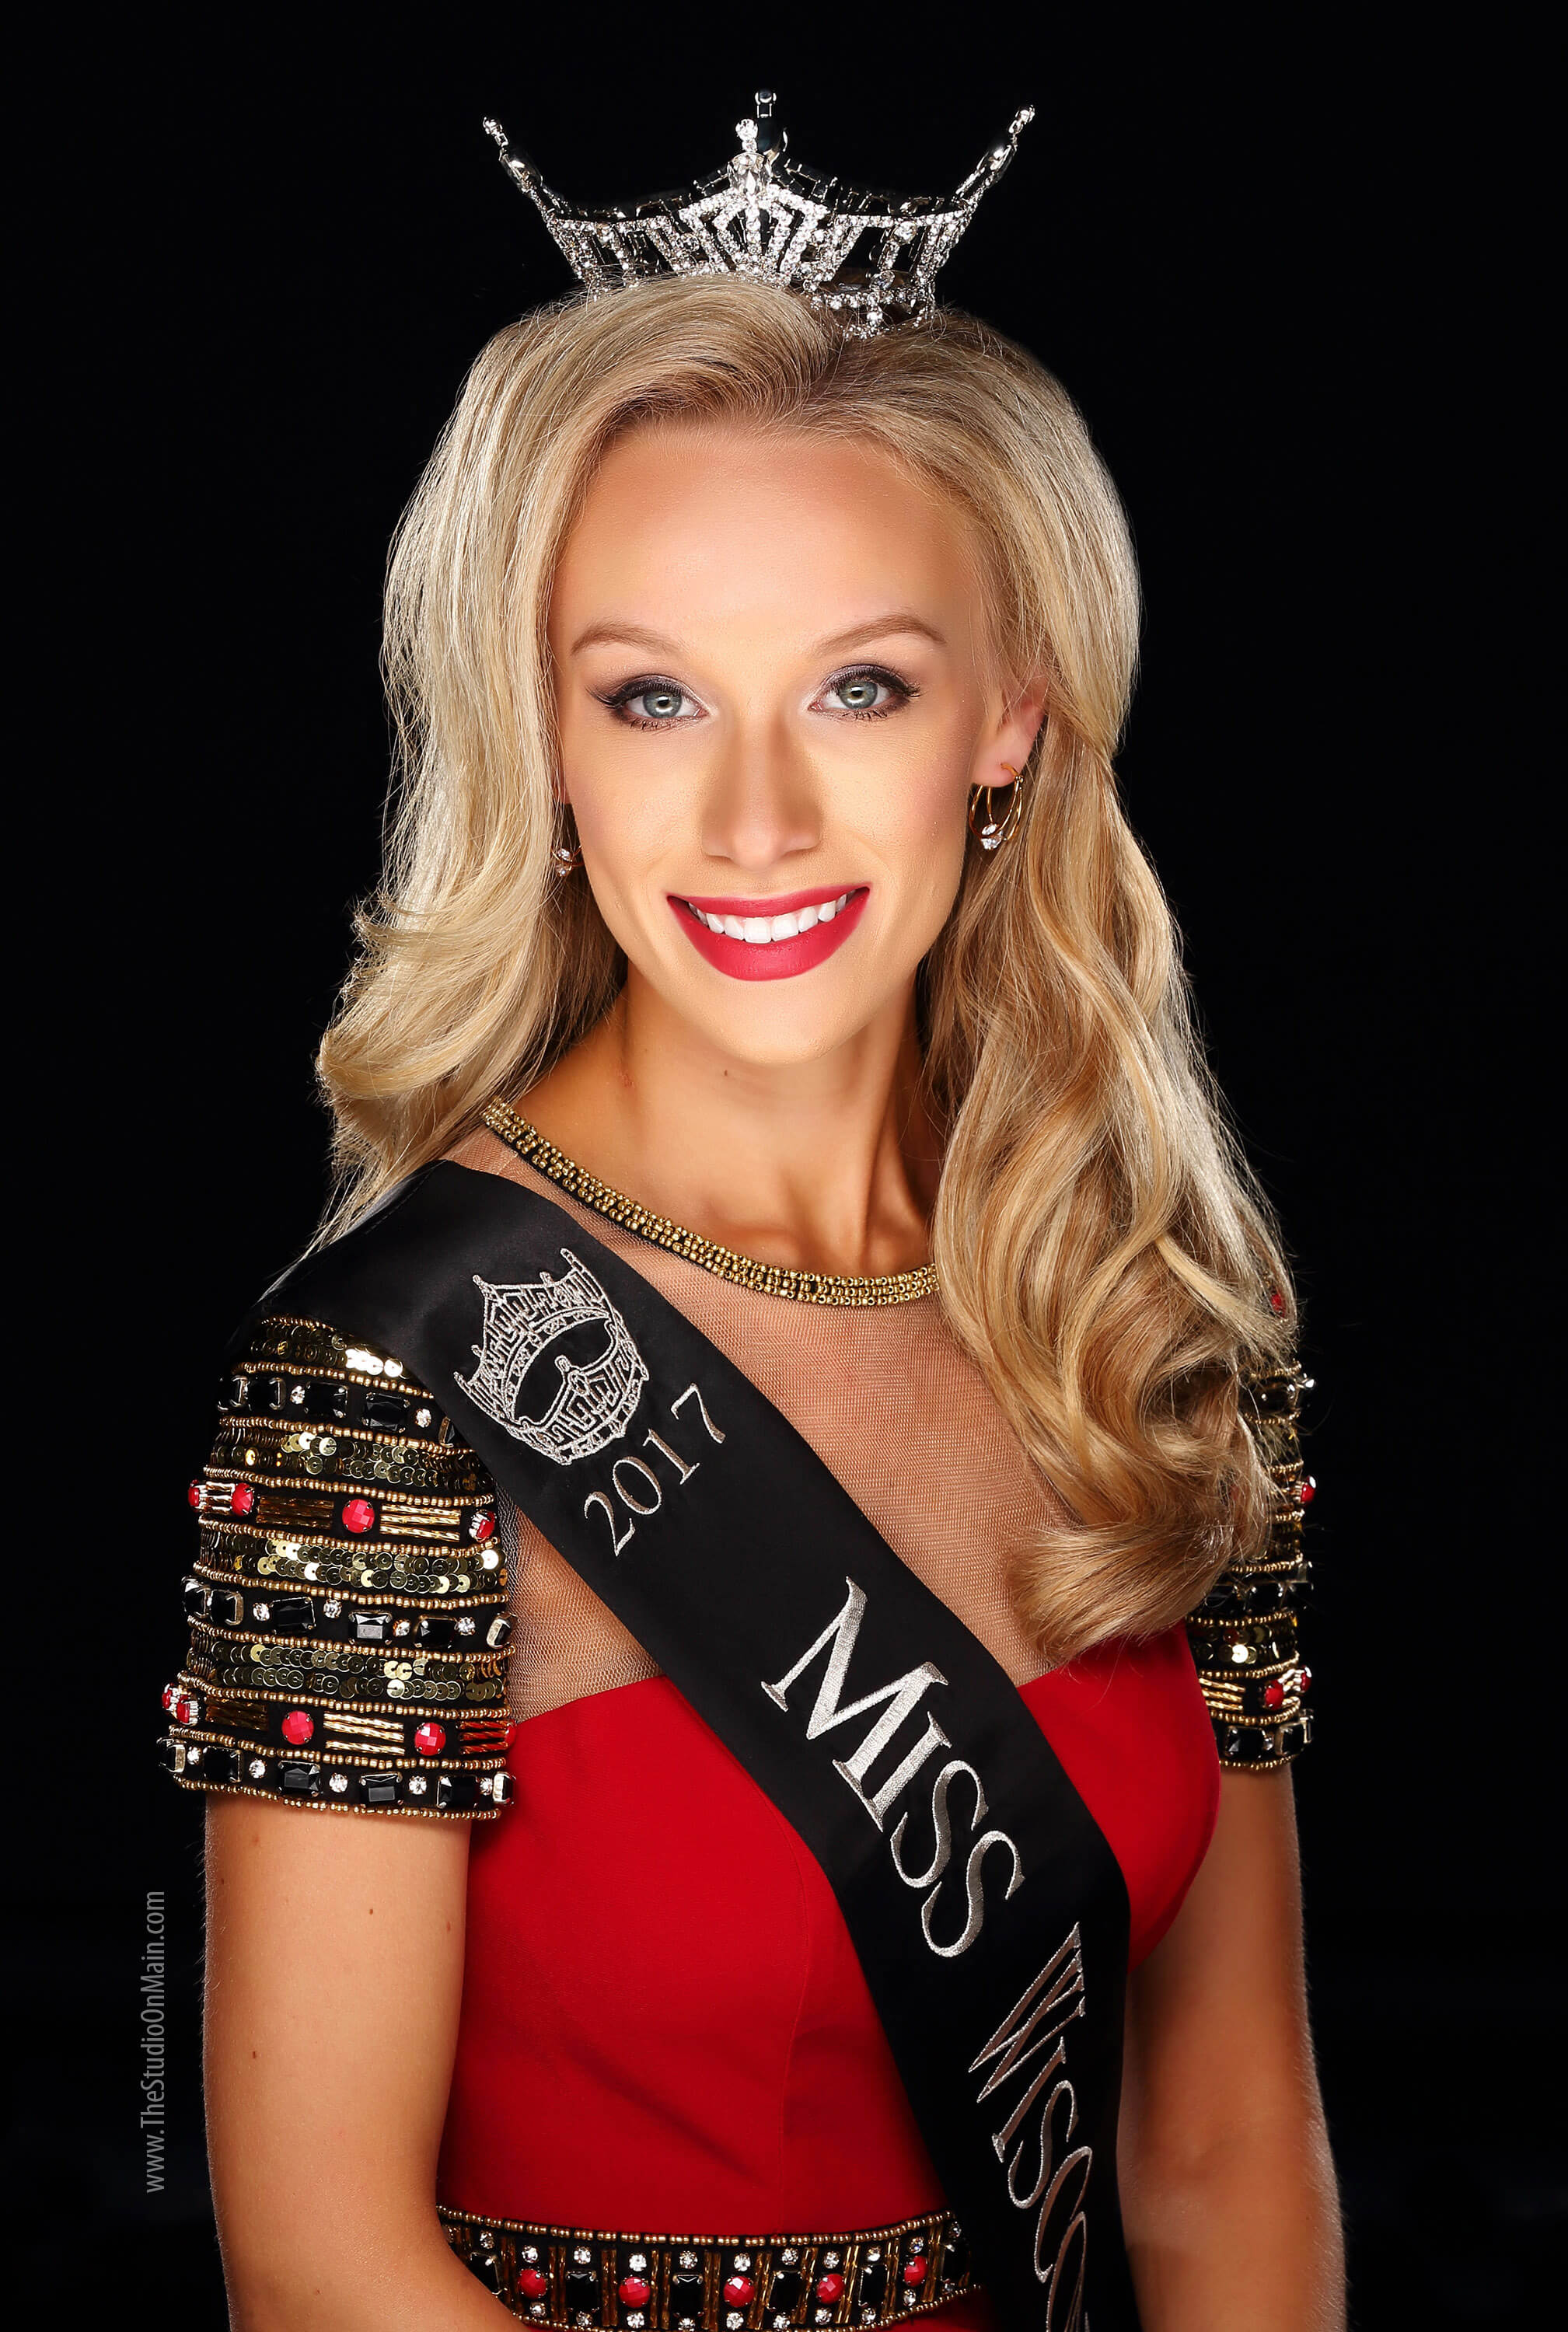 Miss Wisconsin 2017 - McKenna Collins.